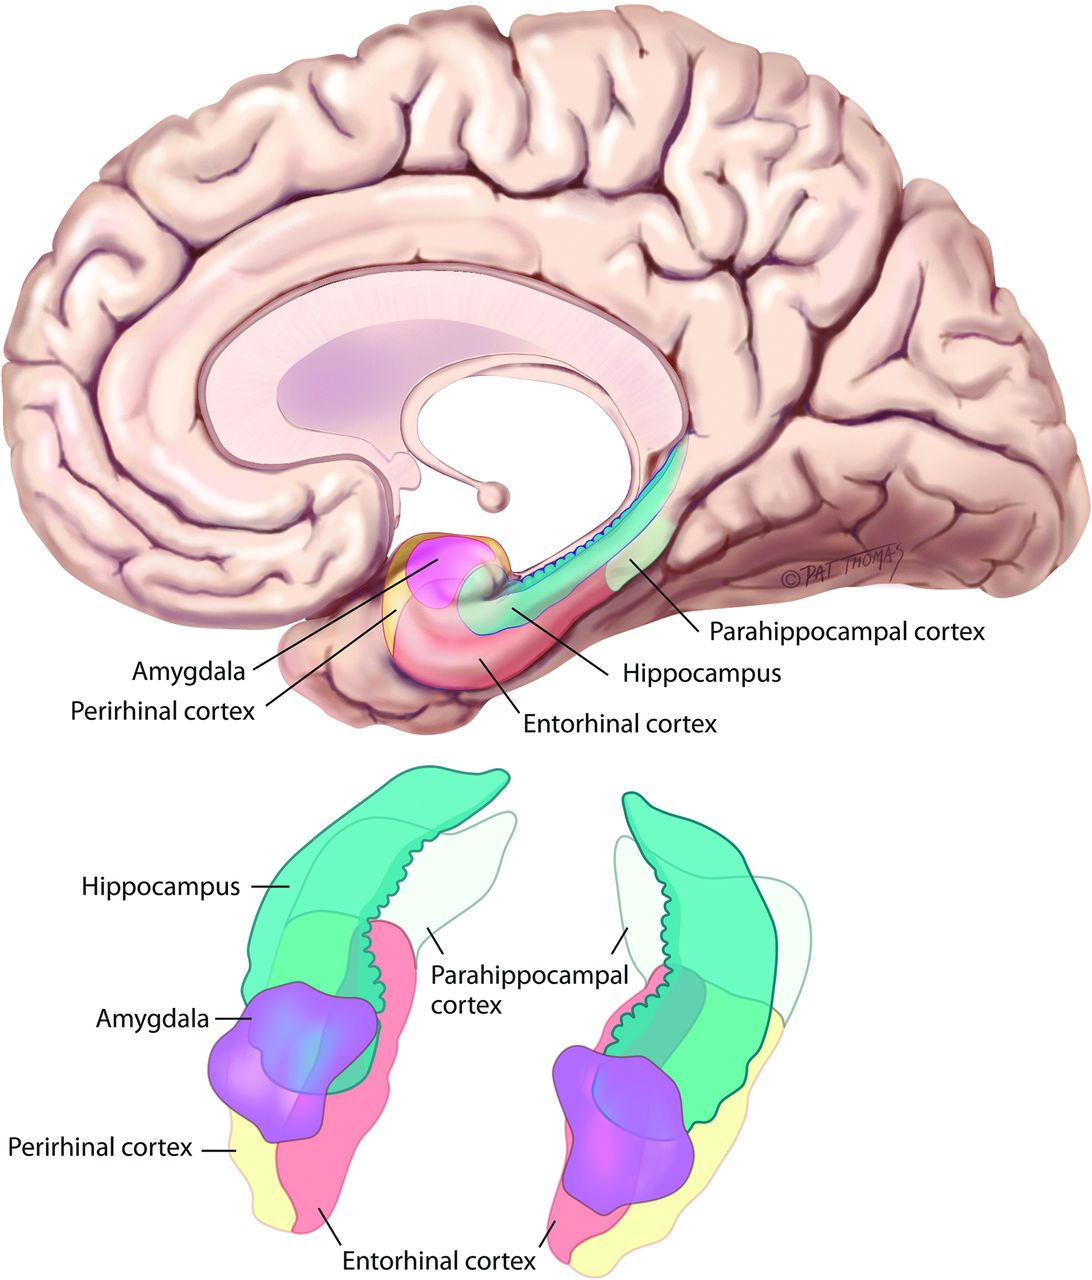 Brain regions affected by amnesia